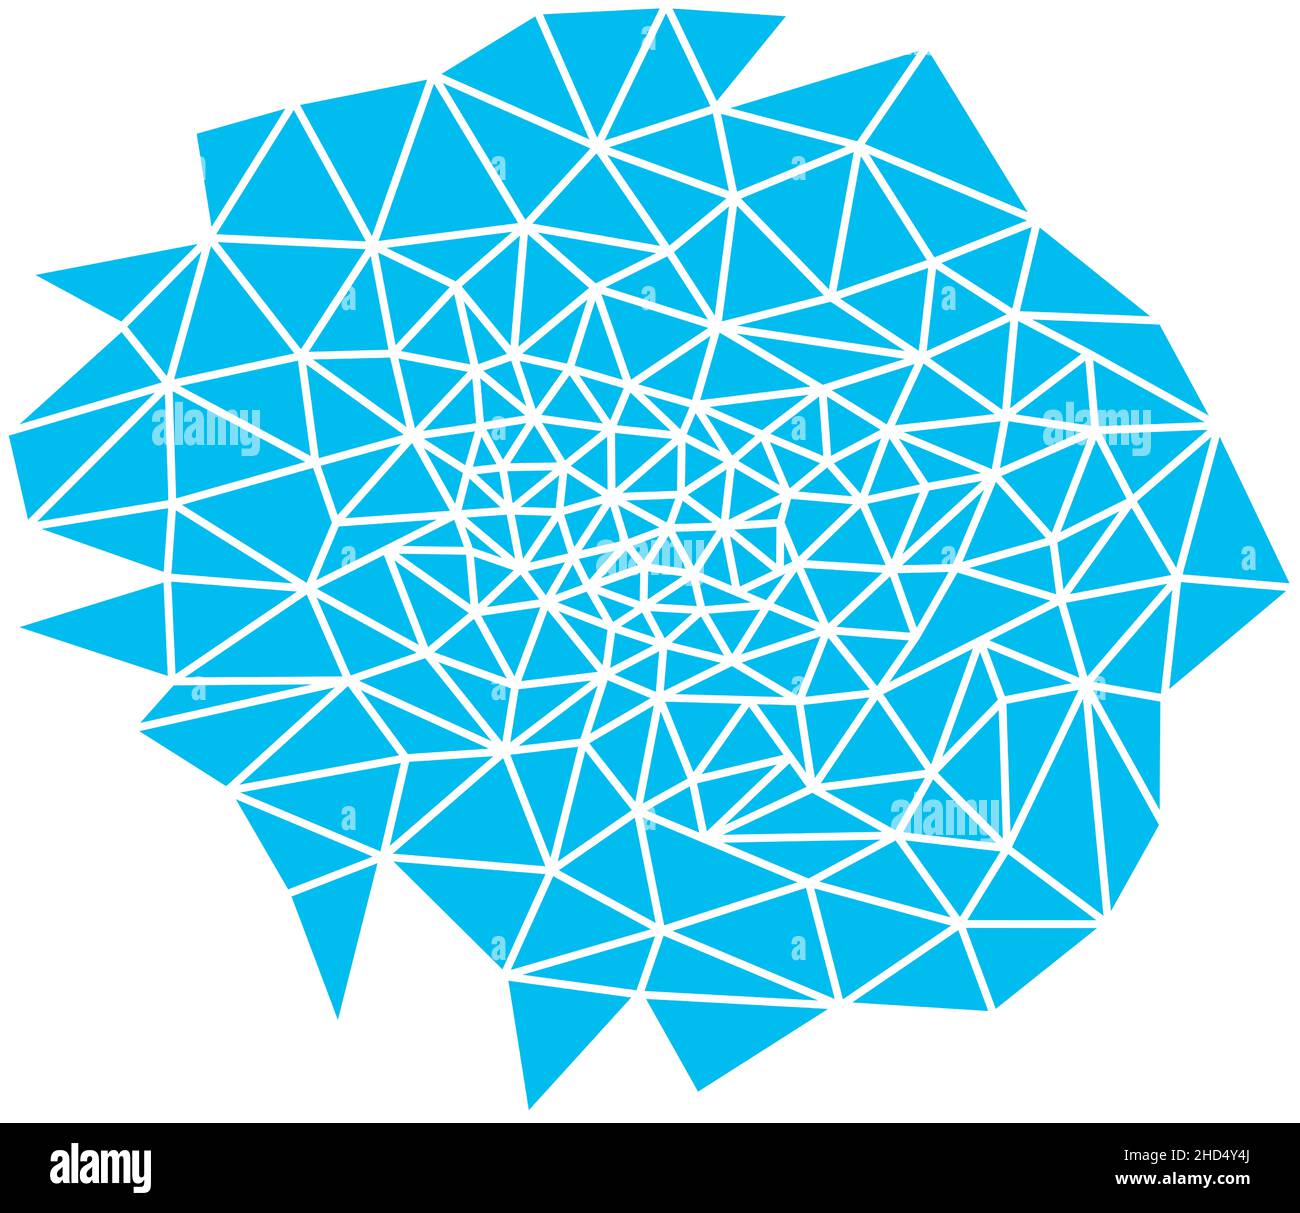 Abstrakter blauer Hintergrund. Geometrische Formen in Form eines Netzes, türkisfarbene Farbe. Es gibt viele Dreiecke in einer ungeordneten Anordnung. Rasterdarstellung. Stockfoto